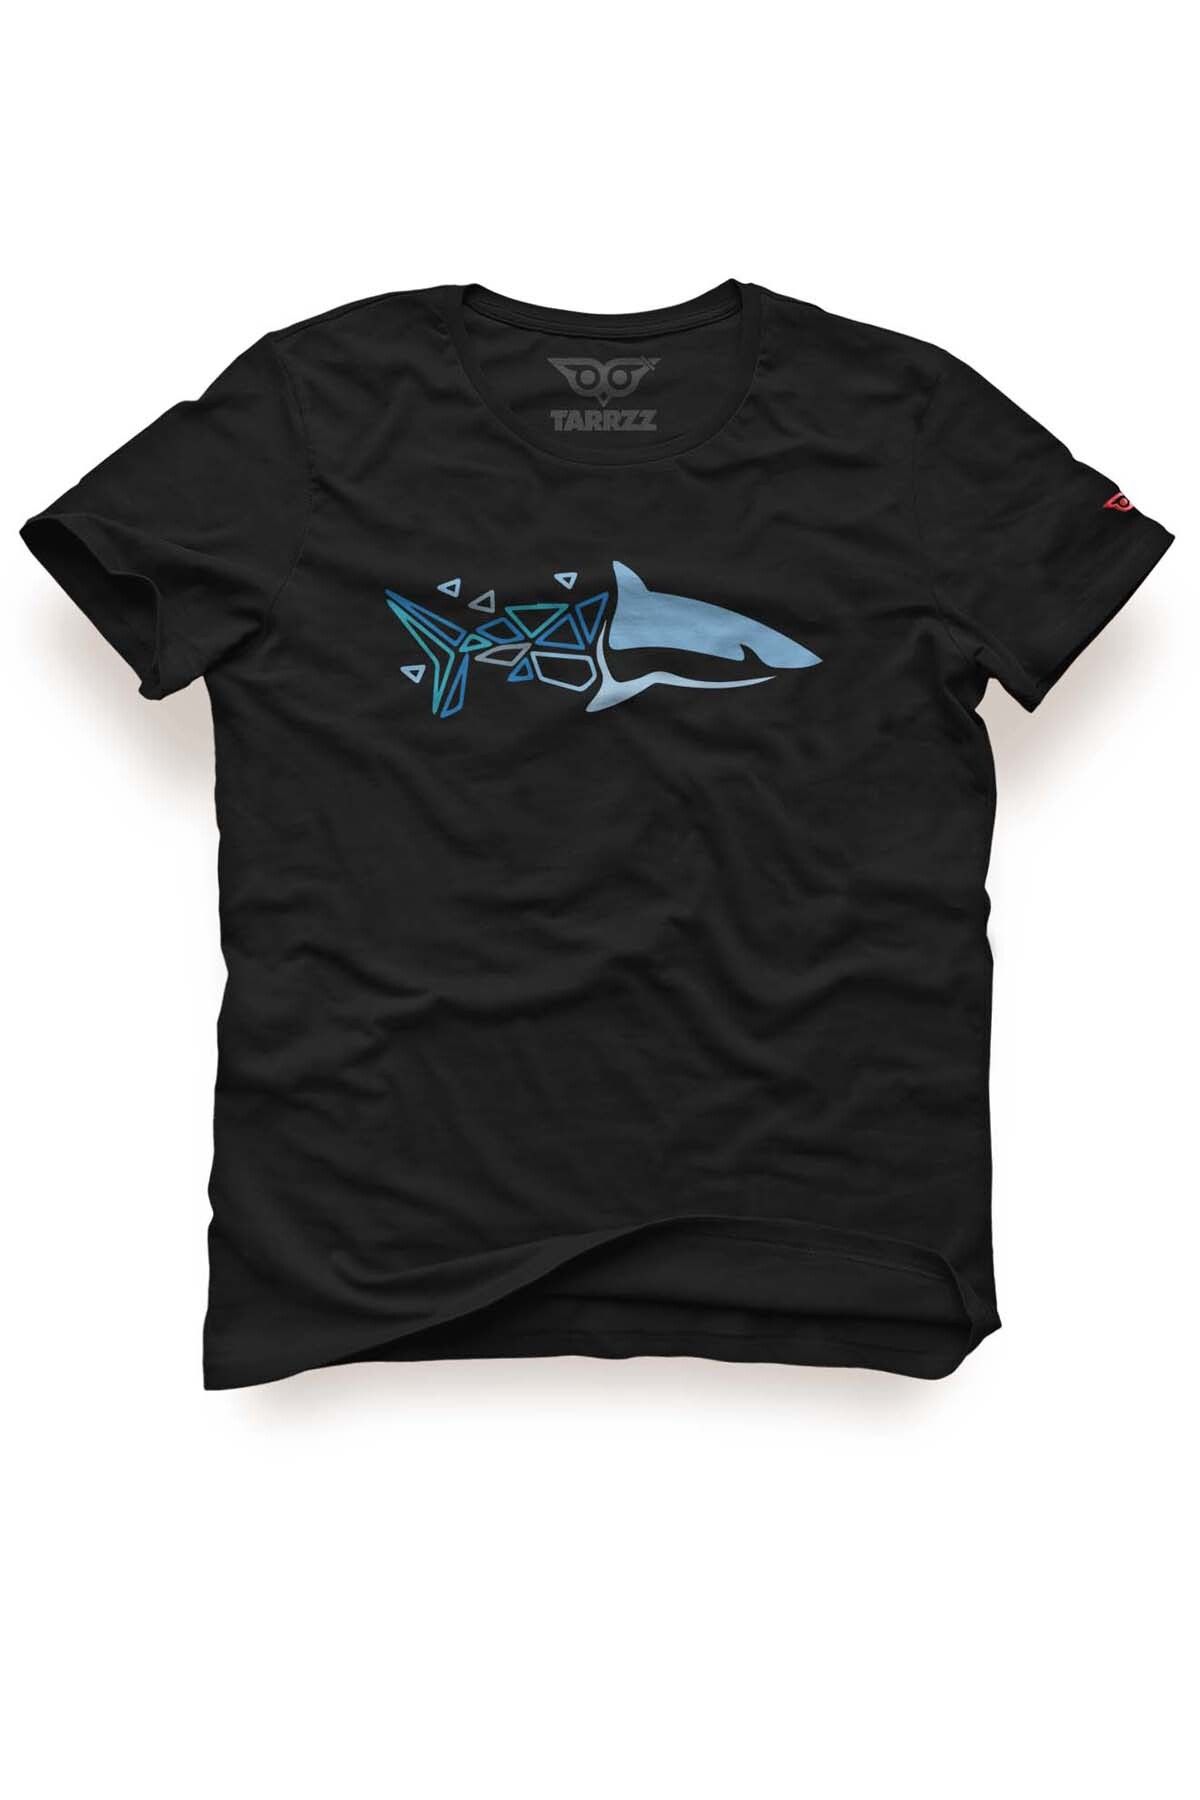 Tarrzzcom Piksel Köpekbalığı Baskılı Tasarım Tişört